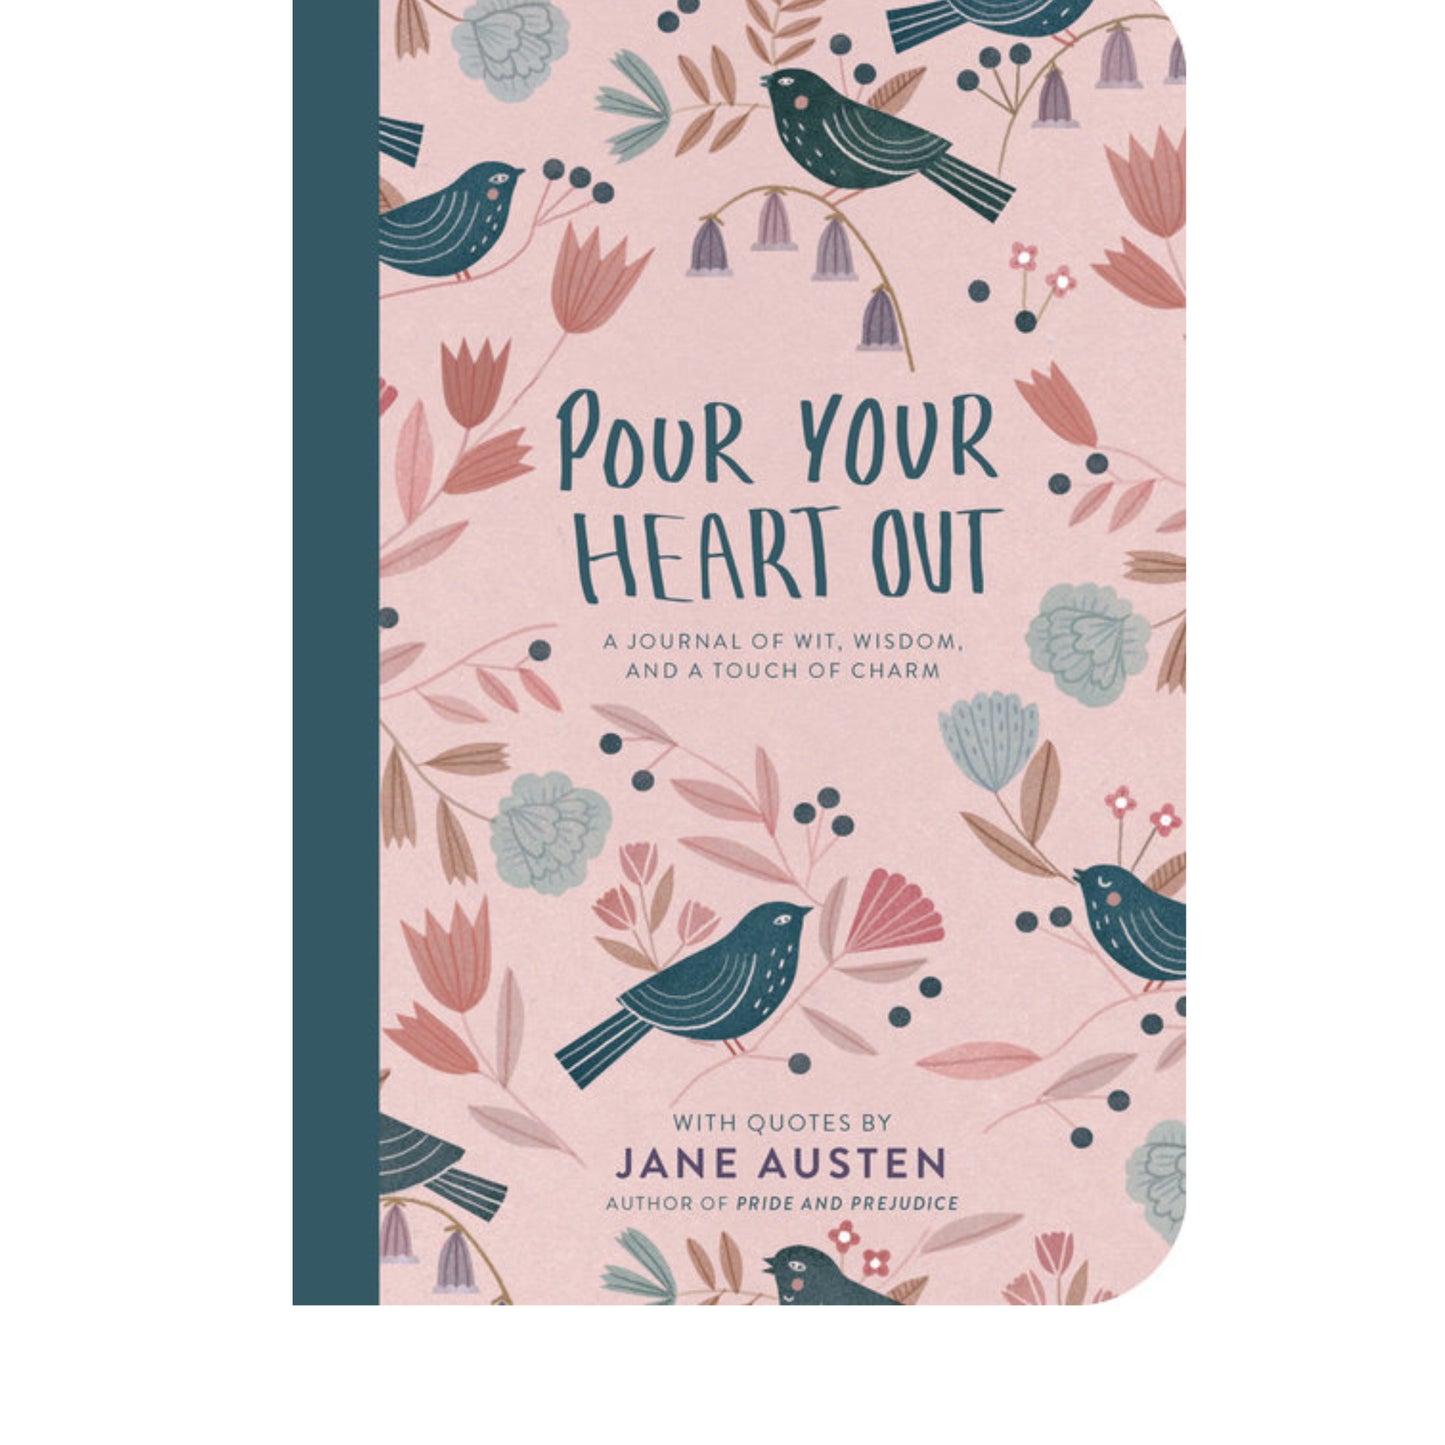 Pour Your Heart Out (Jane Austen)